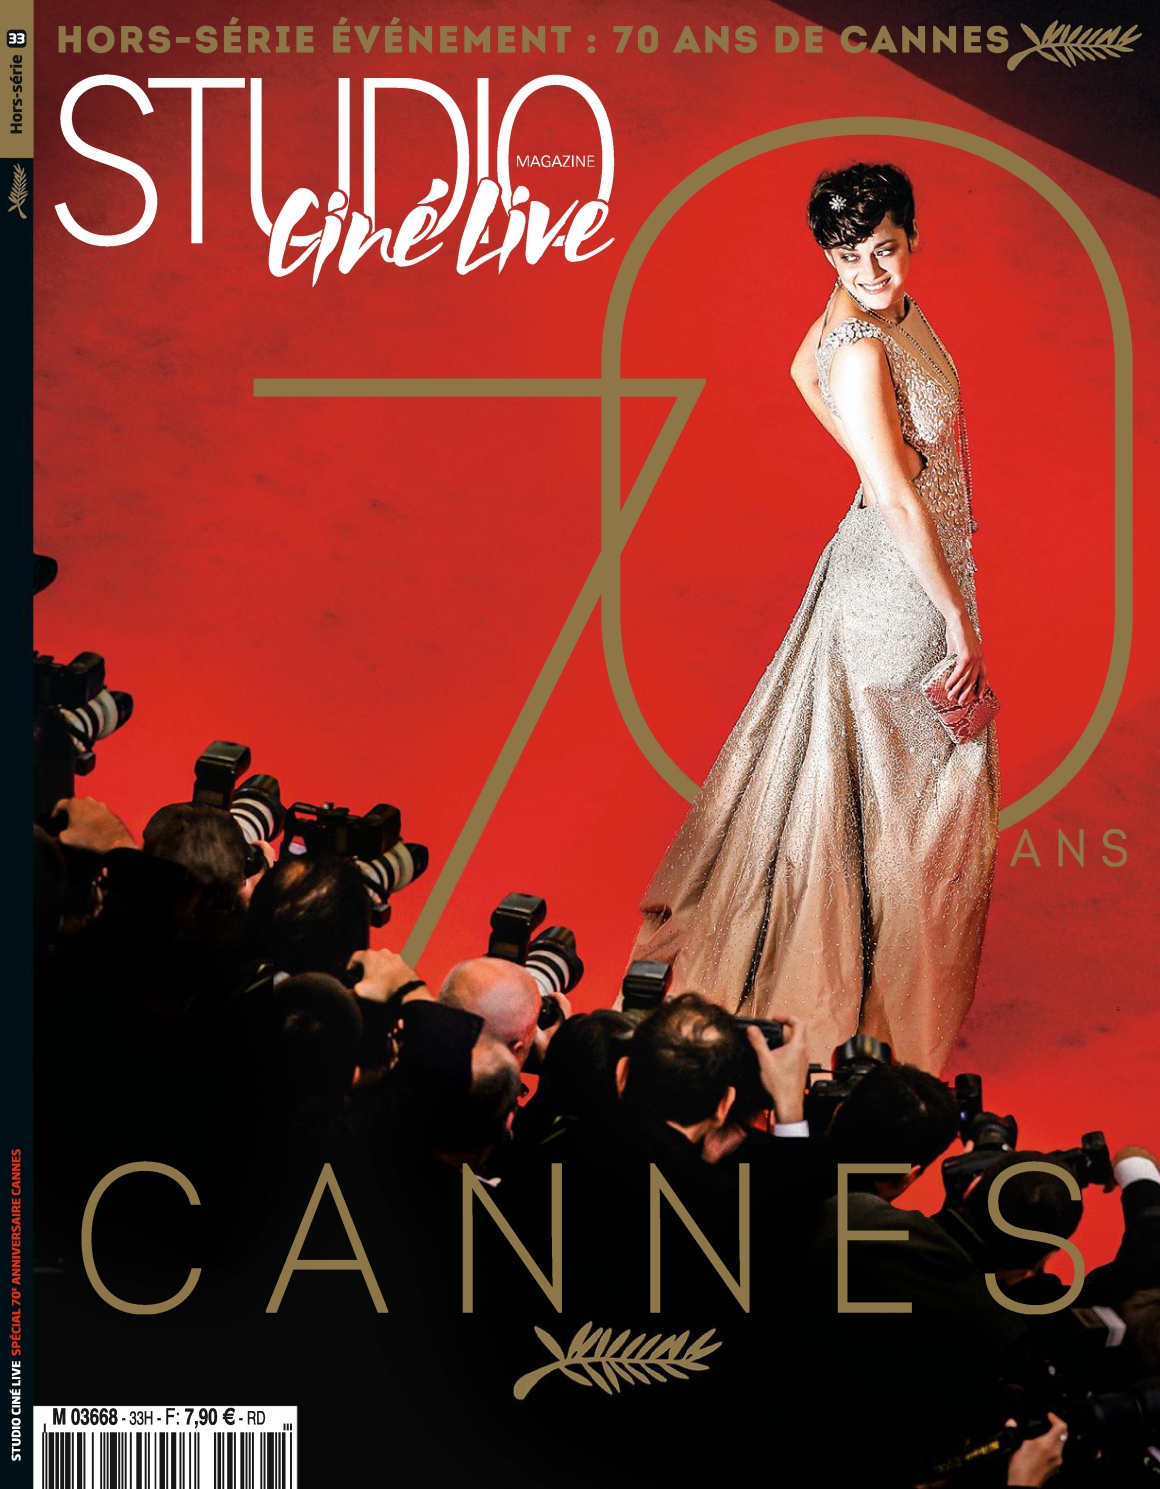 Couverture HS Festival de Cannes 2017 STudio Ciné Live